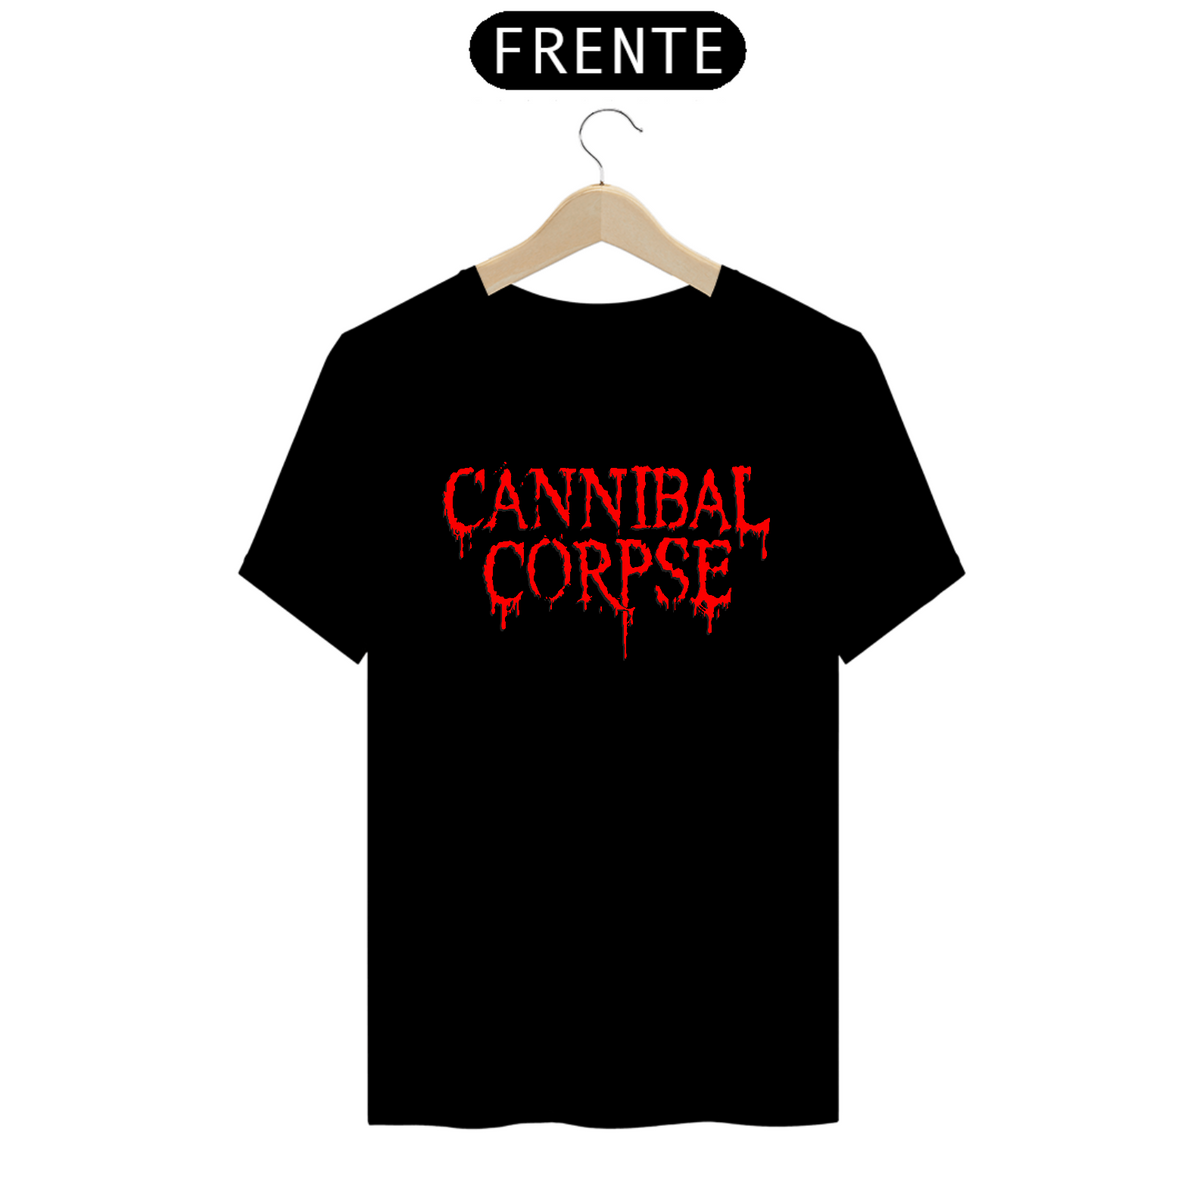 Nome do produto: Cannibal Corpse